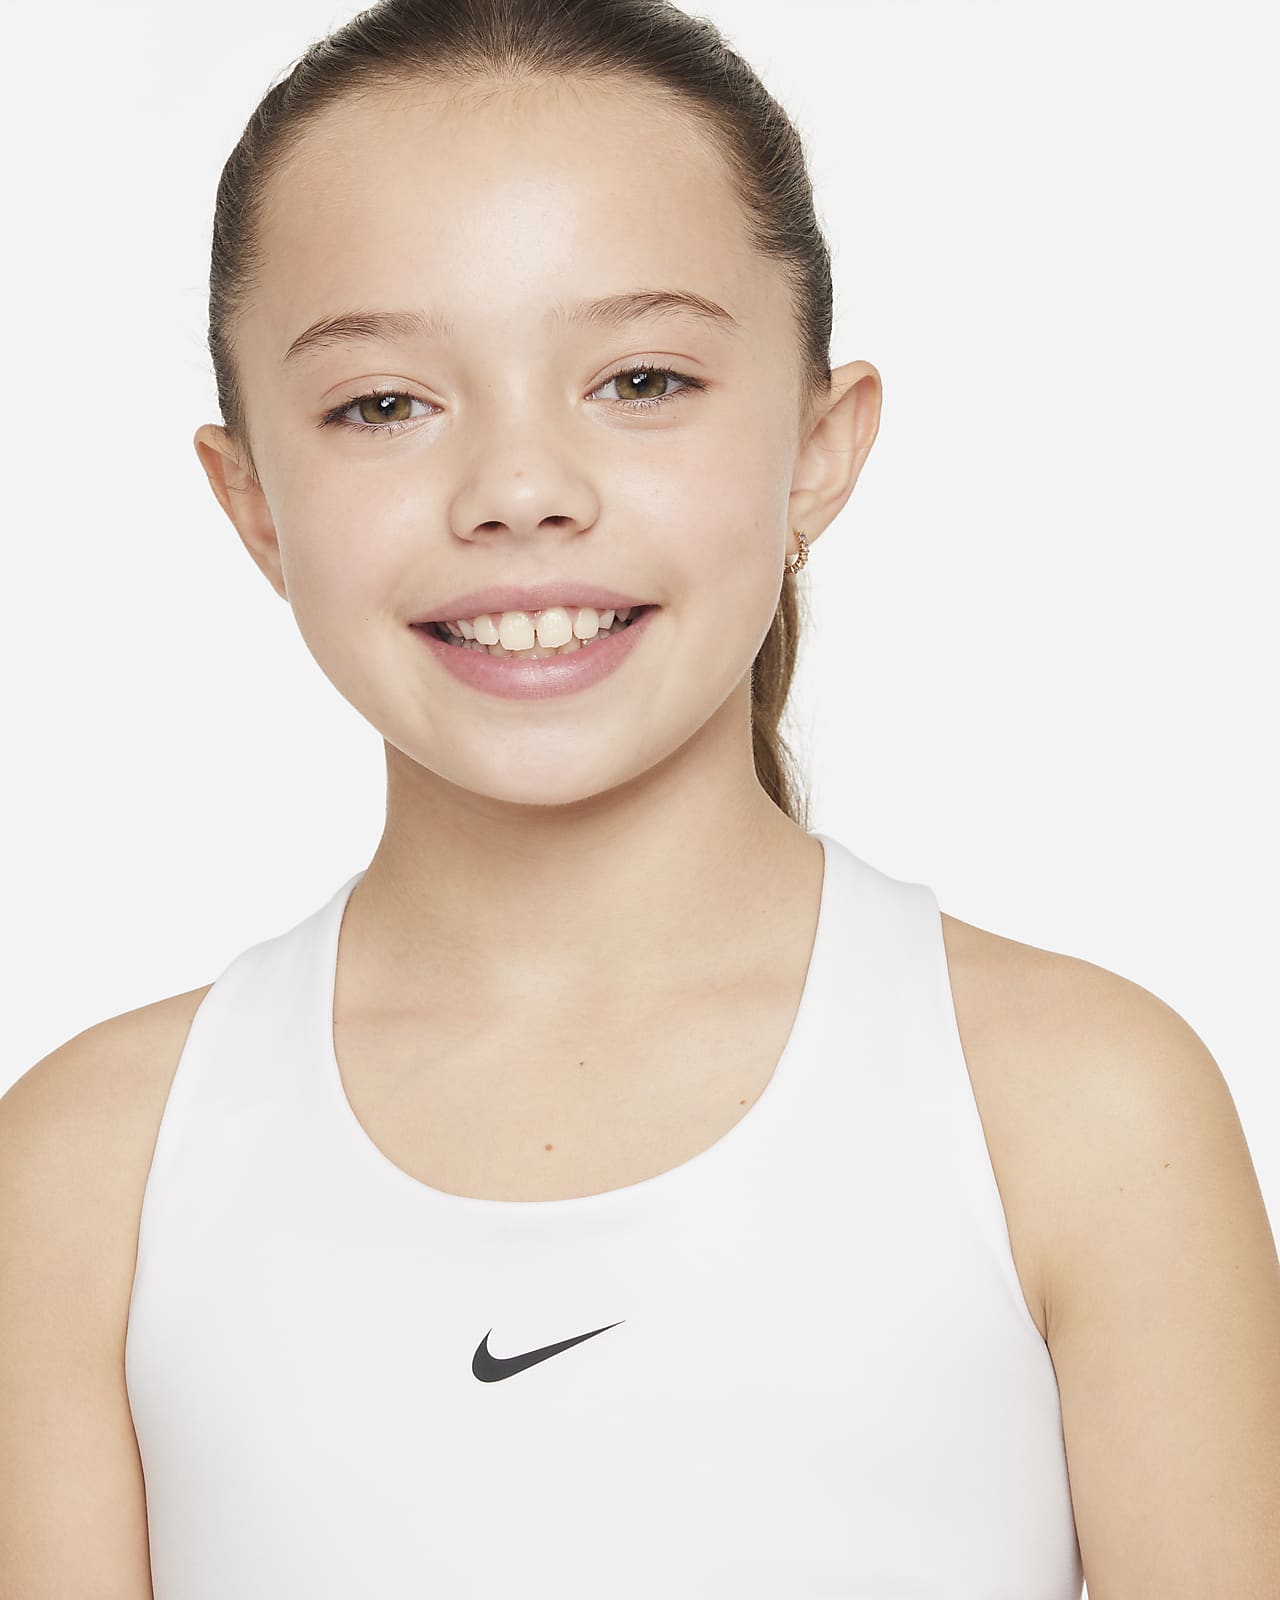 Nike Dri-FIT Swoosh Older Kids' (Girls') Tank Sports Bra. UK